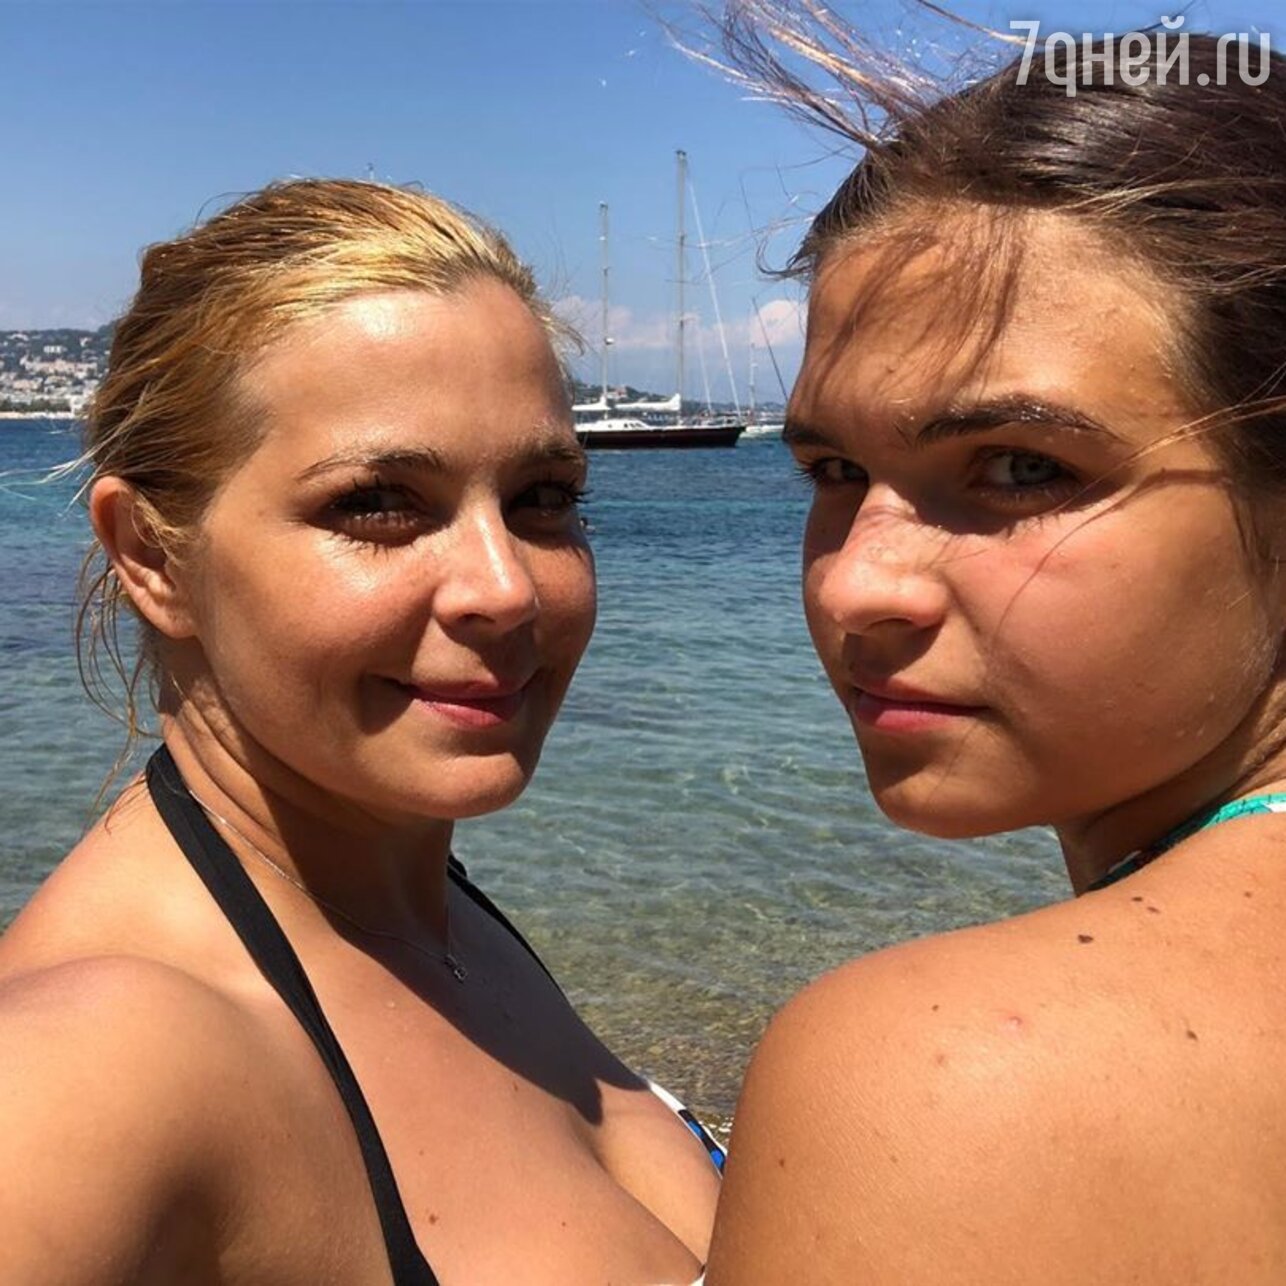 41-летняя Ирина Пегова блеснула пышными формами в купальнике - 7Дней.ру